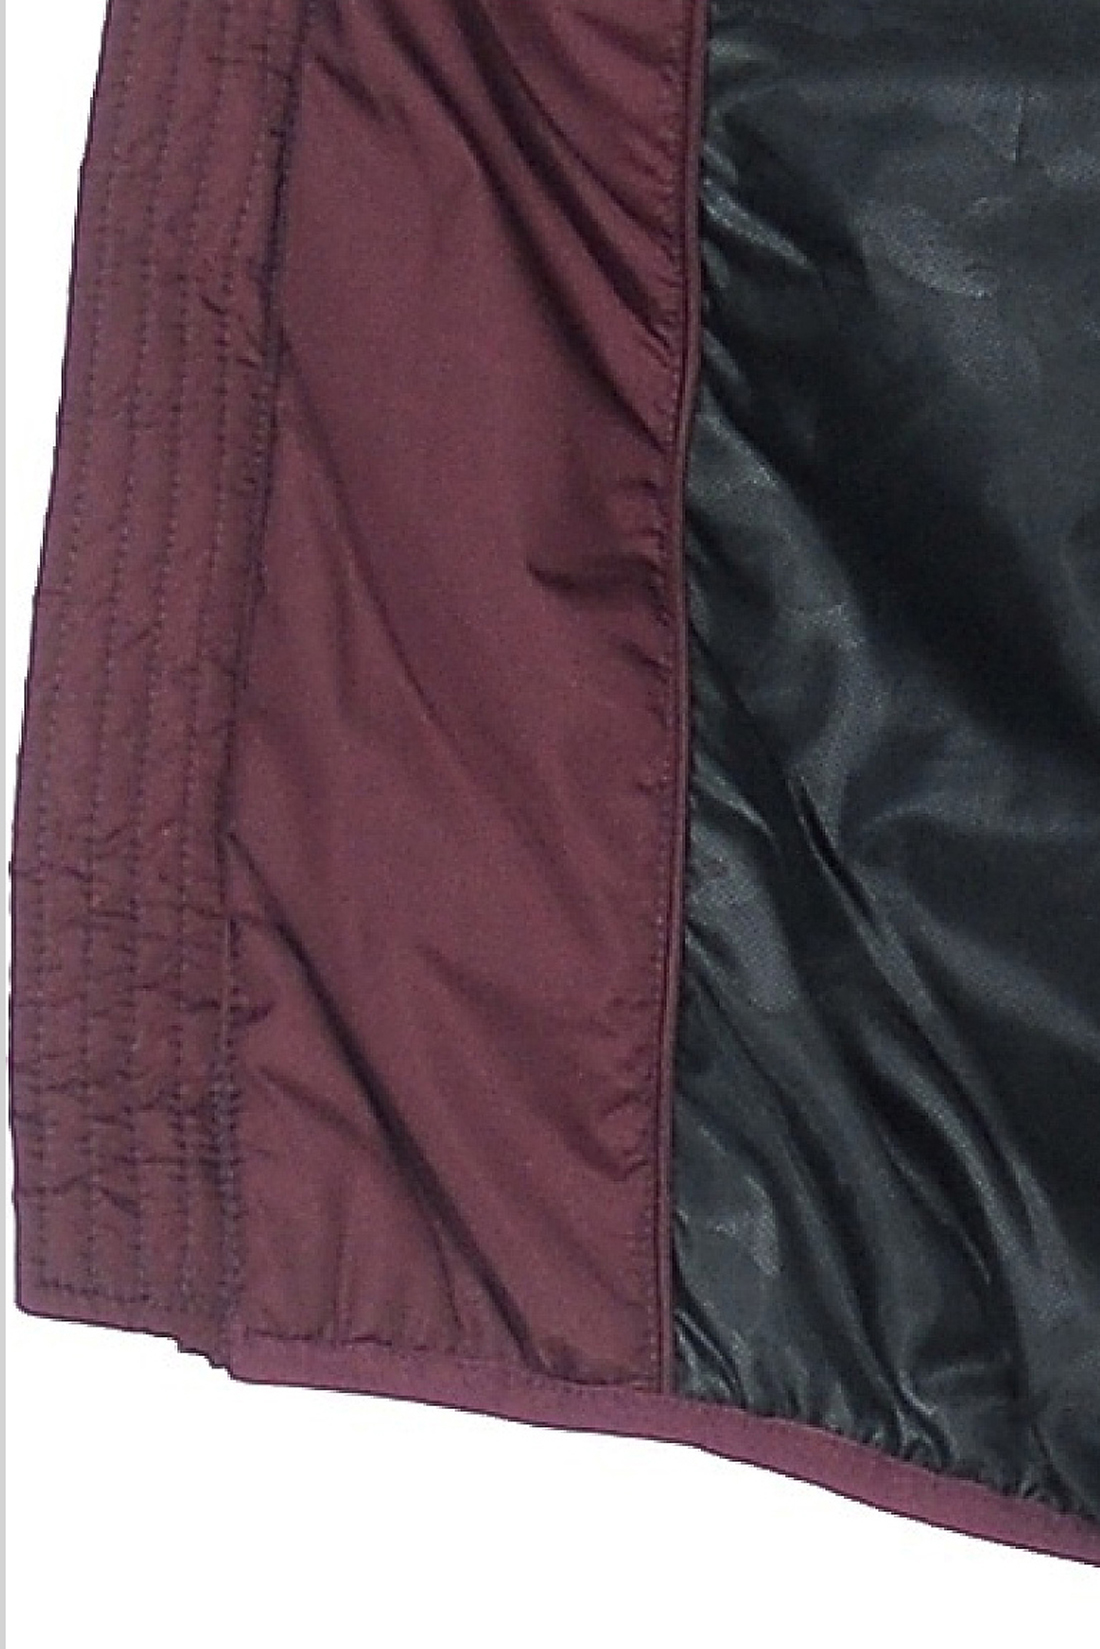 Куртка с квадратной простёжкой (арт. baon B538012), размер 3XL, цвет бордовый Куртка с квадратной простёжкой (арт. baon B538012) - фото 3